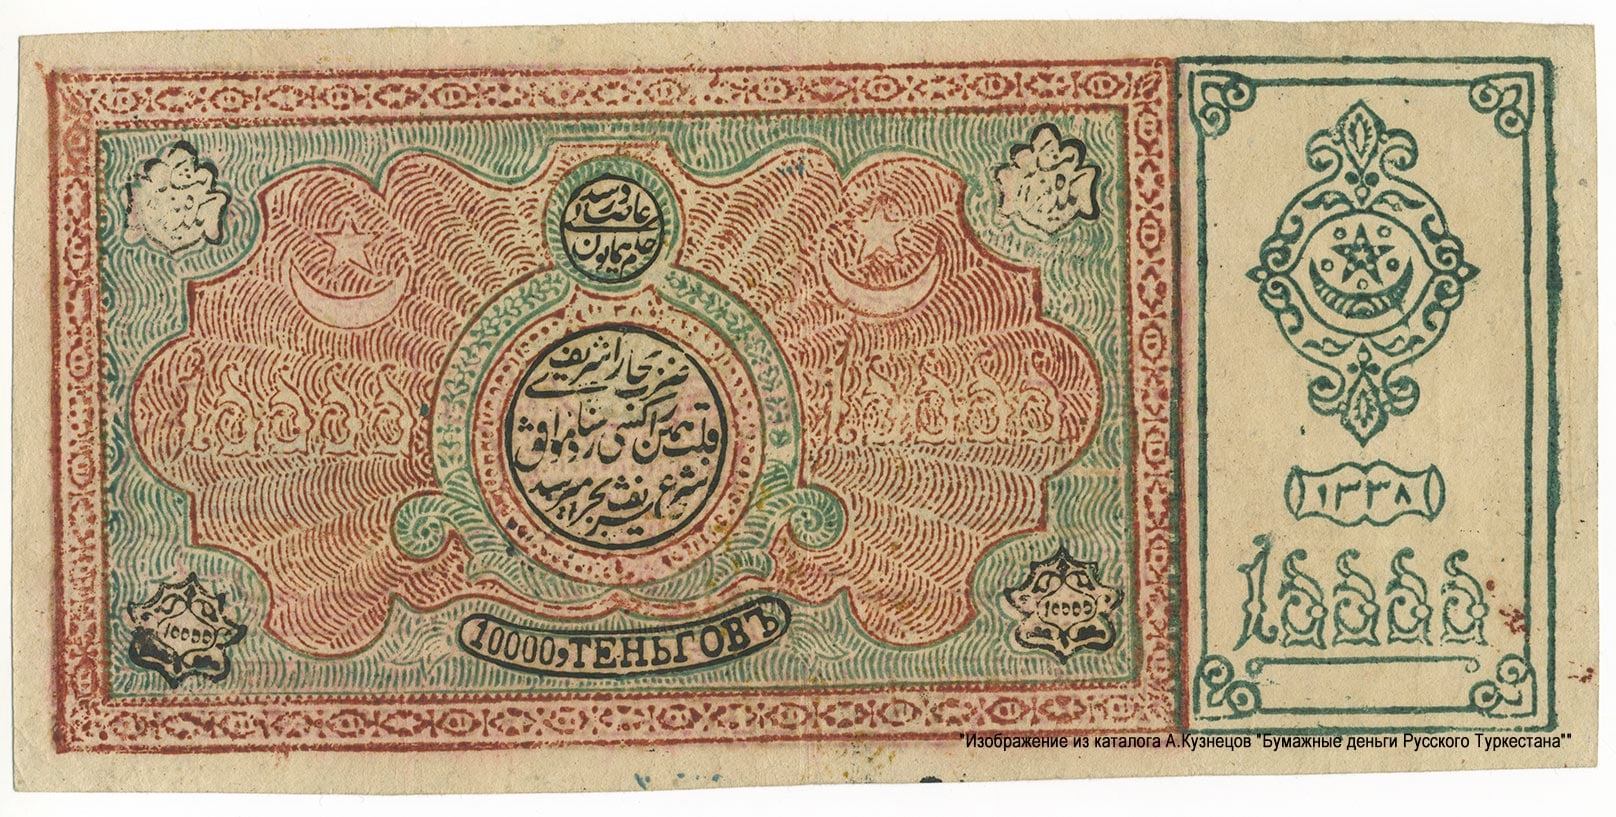 عملة ورقية من إصدار إمارة بخارى طبعت في عهد السيد عالم خان آخر أمراء بخارى.